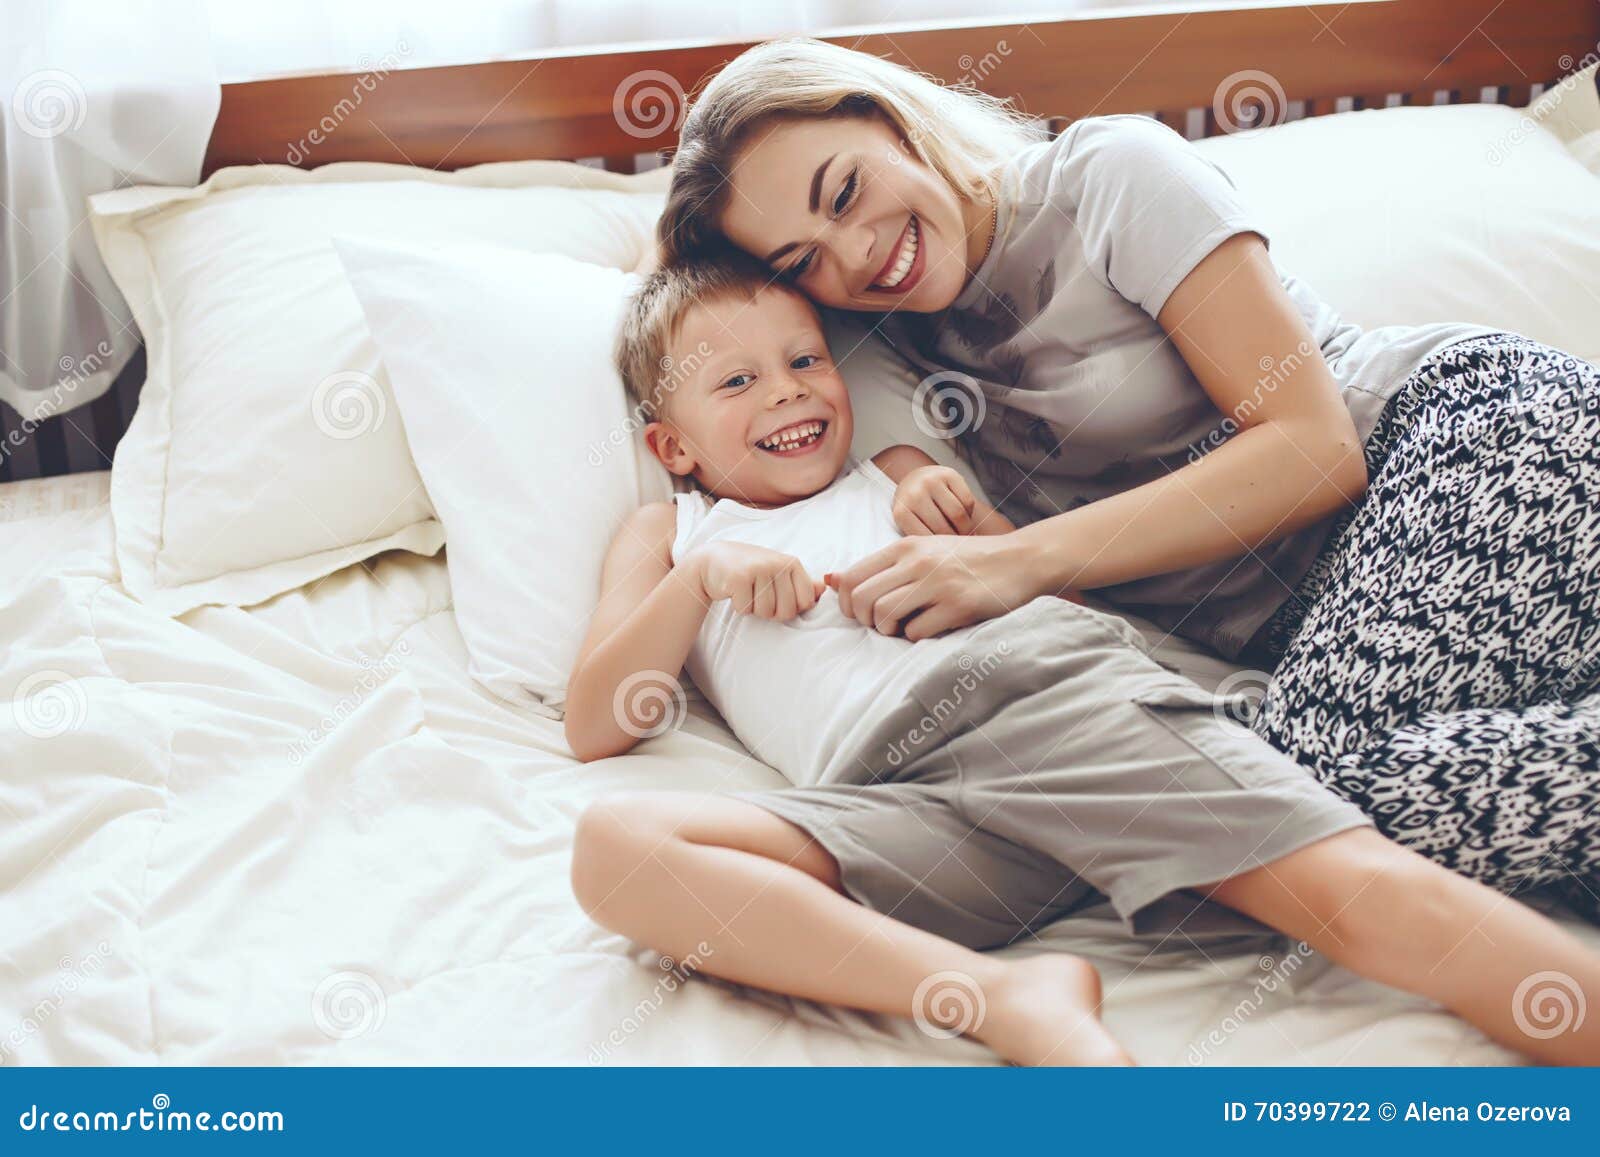 С ее мамой в постели. Мама у кровати ребенка. Фотосессия мама с сыном в постели. Фотосессия на кровати с ребенком и мамой. Кровать для сына.